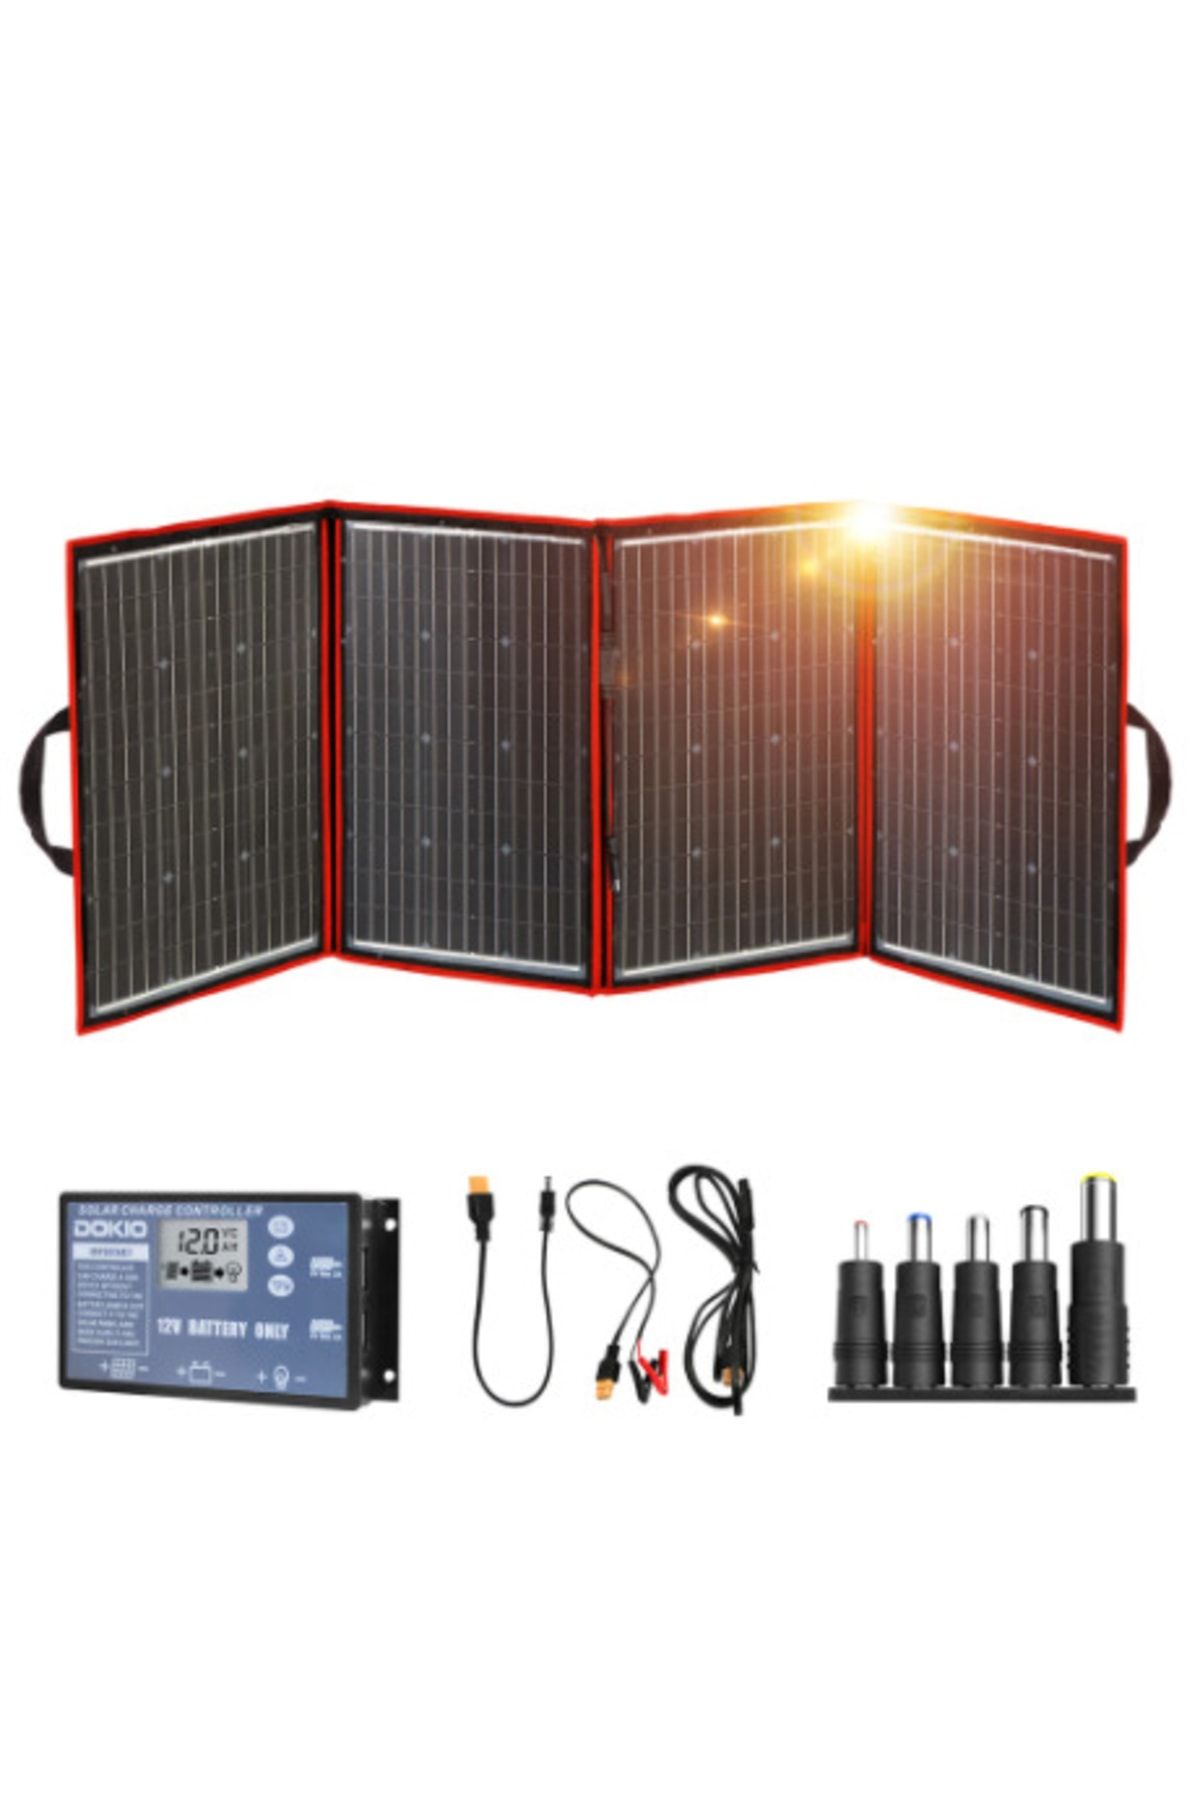 dokio Taşınabilir Katlanabilir Monokristal Güneş Paneli 220wp + Şarj Cihazı + Kablolar